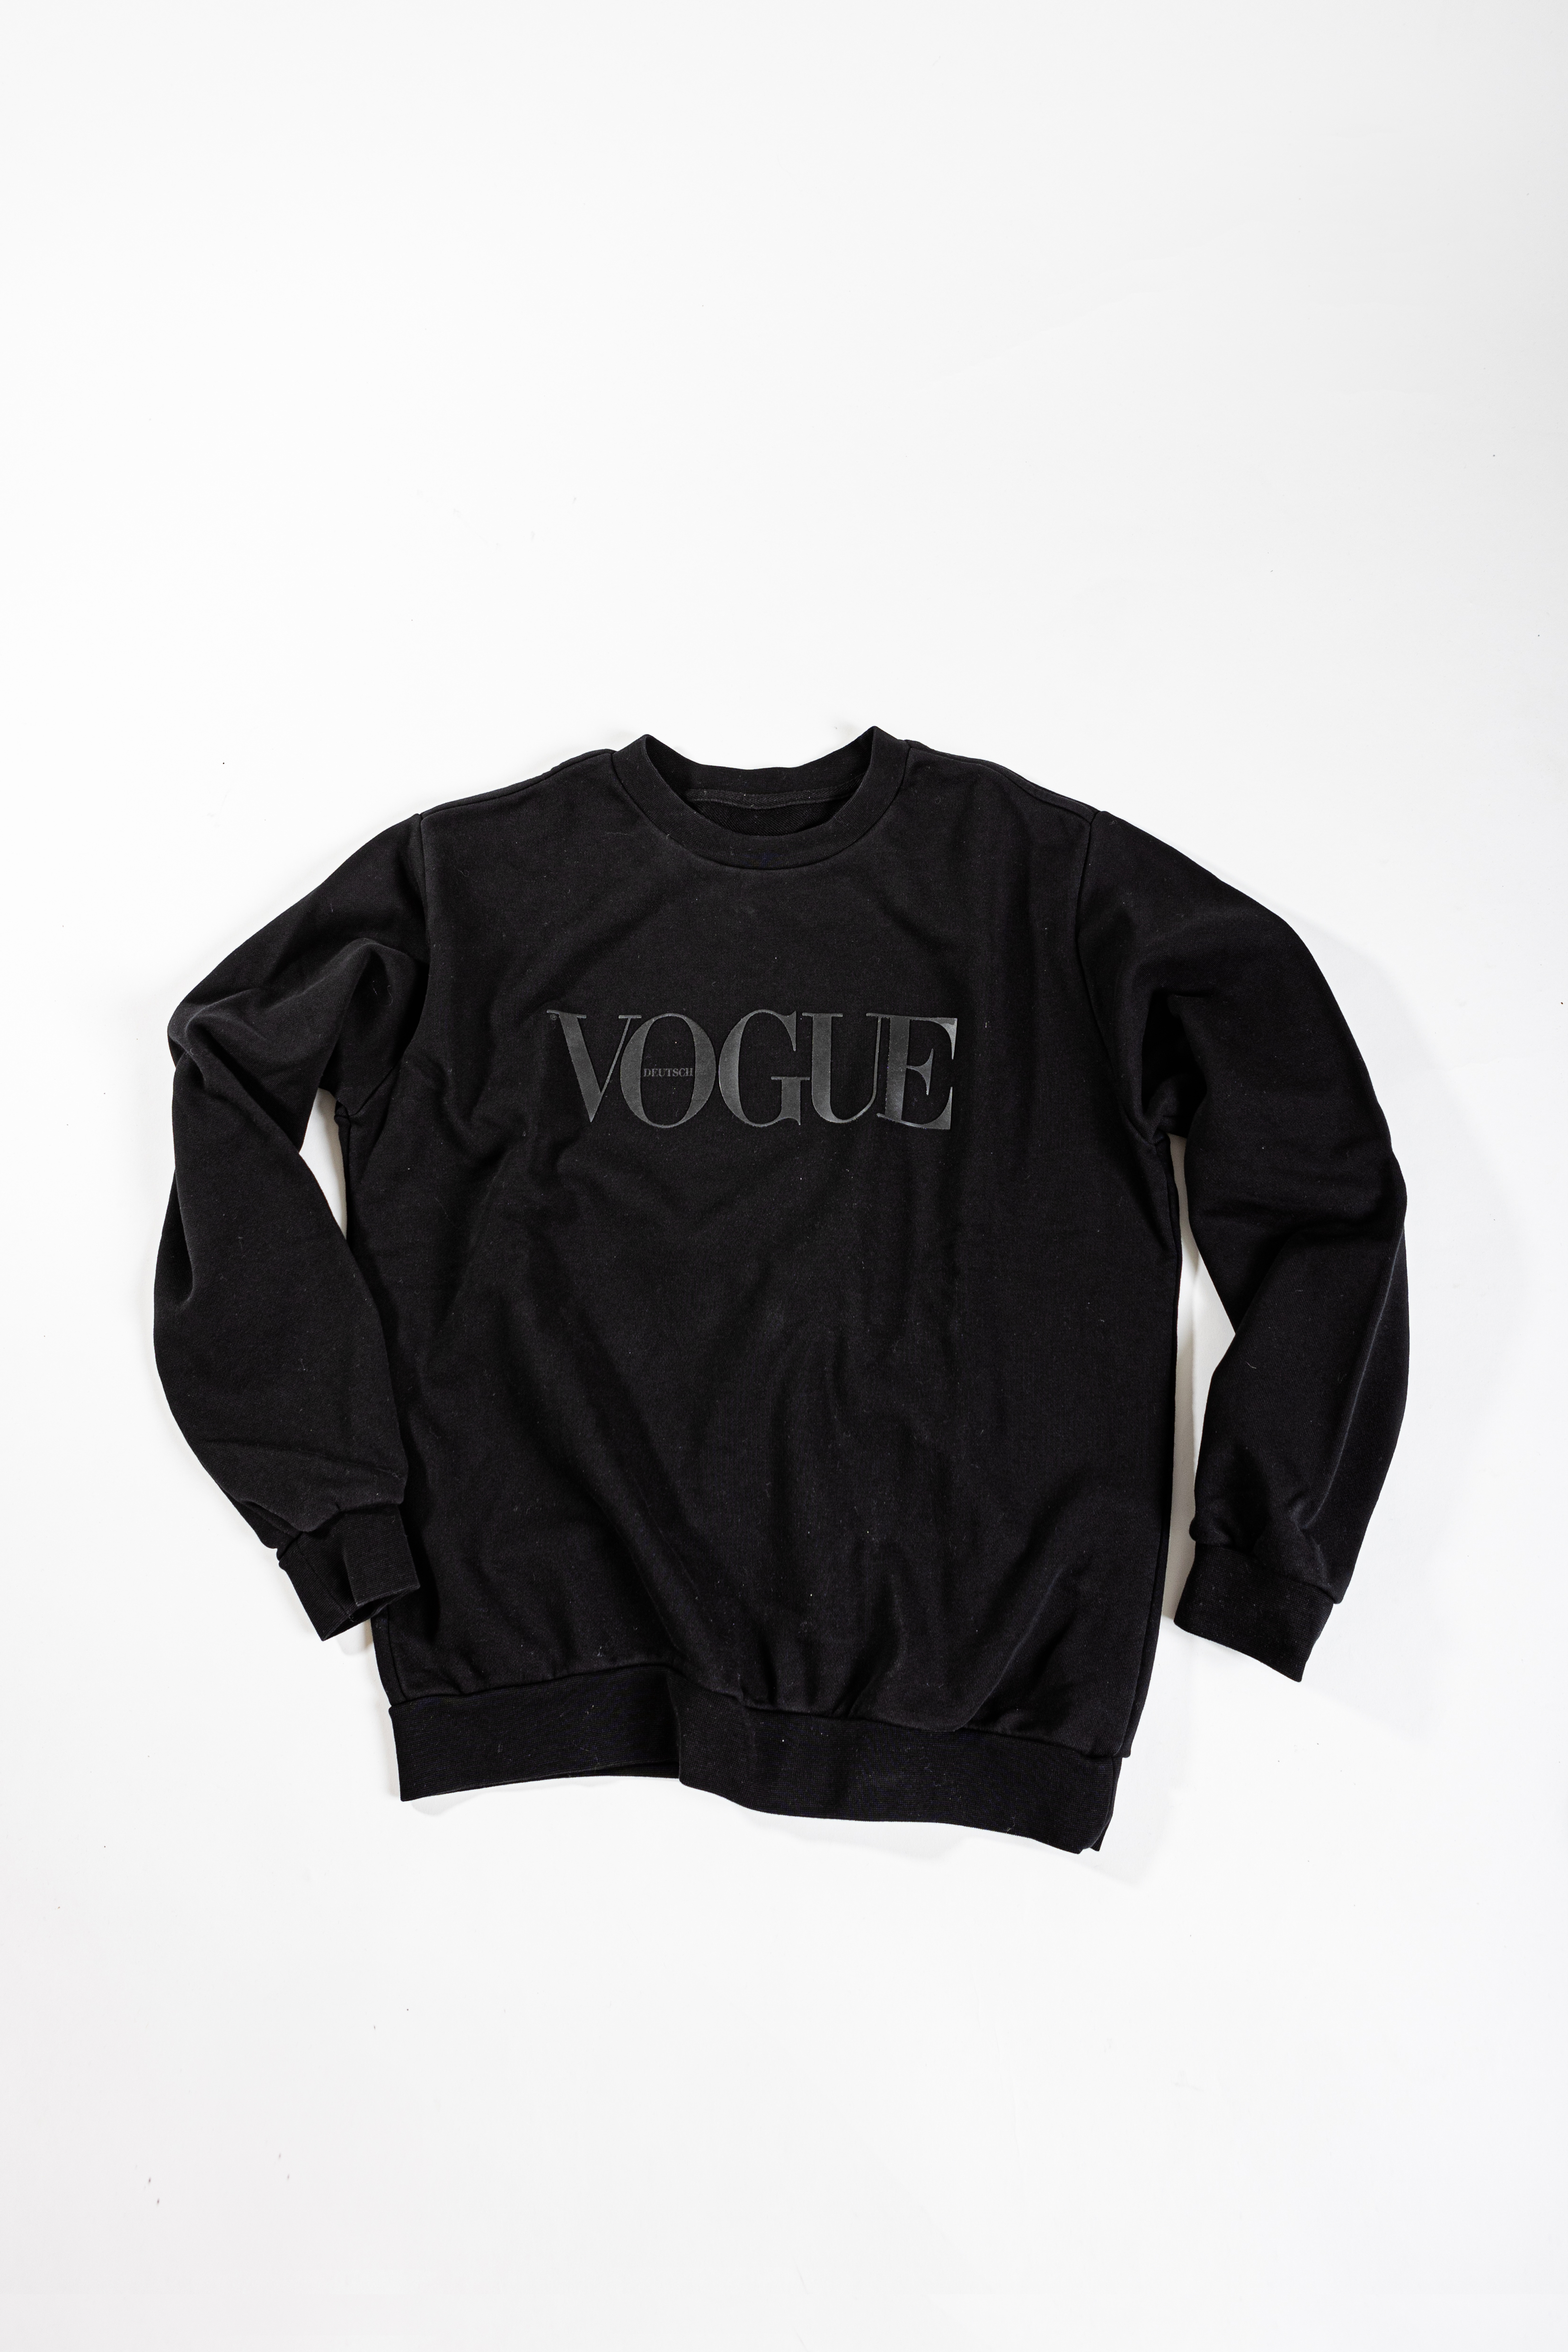 VOGUE Sweater schwarz L